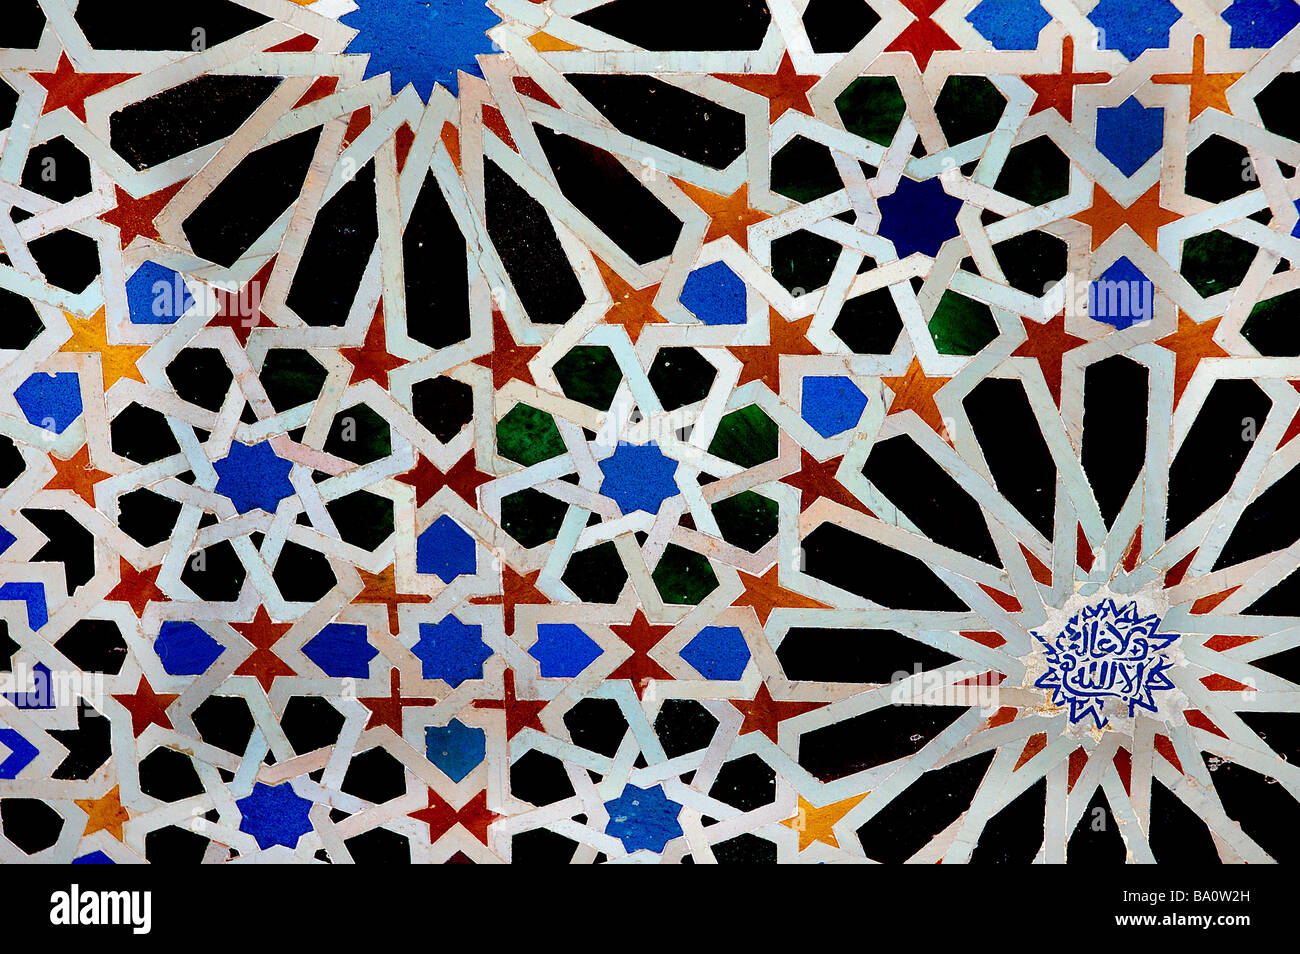 Dekorfliese an der Alhambra mit arabischen Designdetails in Form von farbigen geometrischen Muster Stockfoto